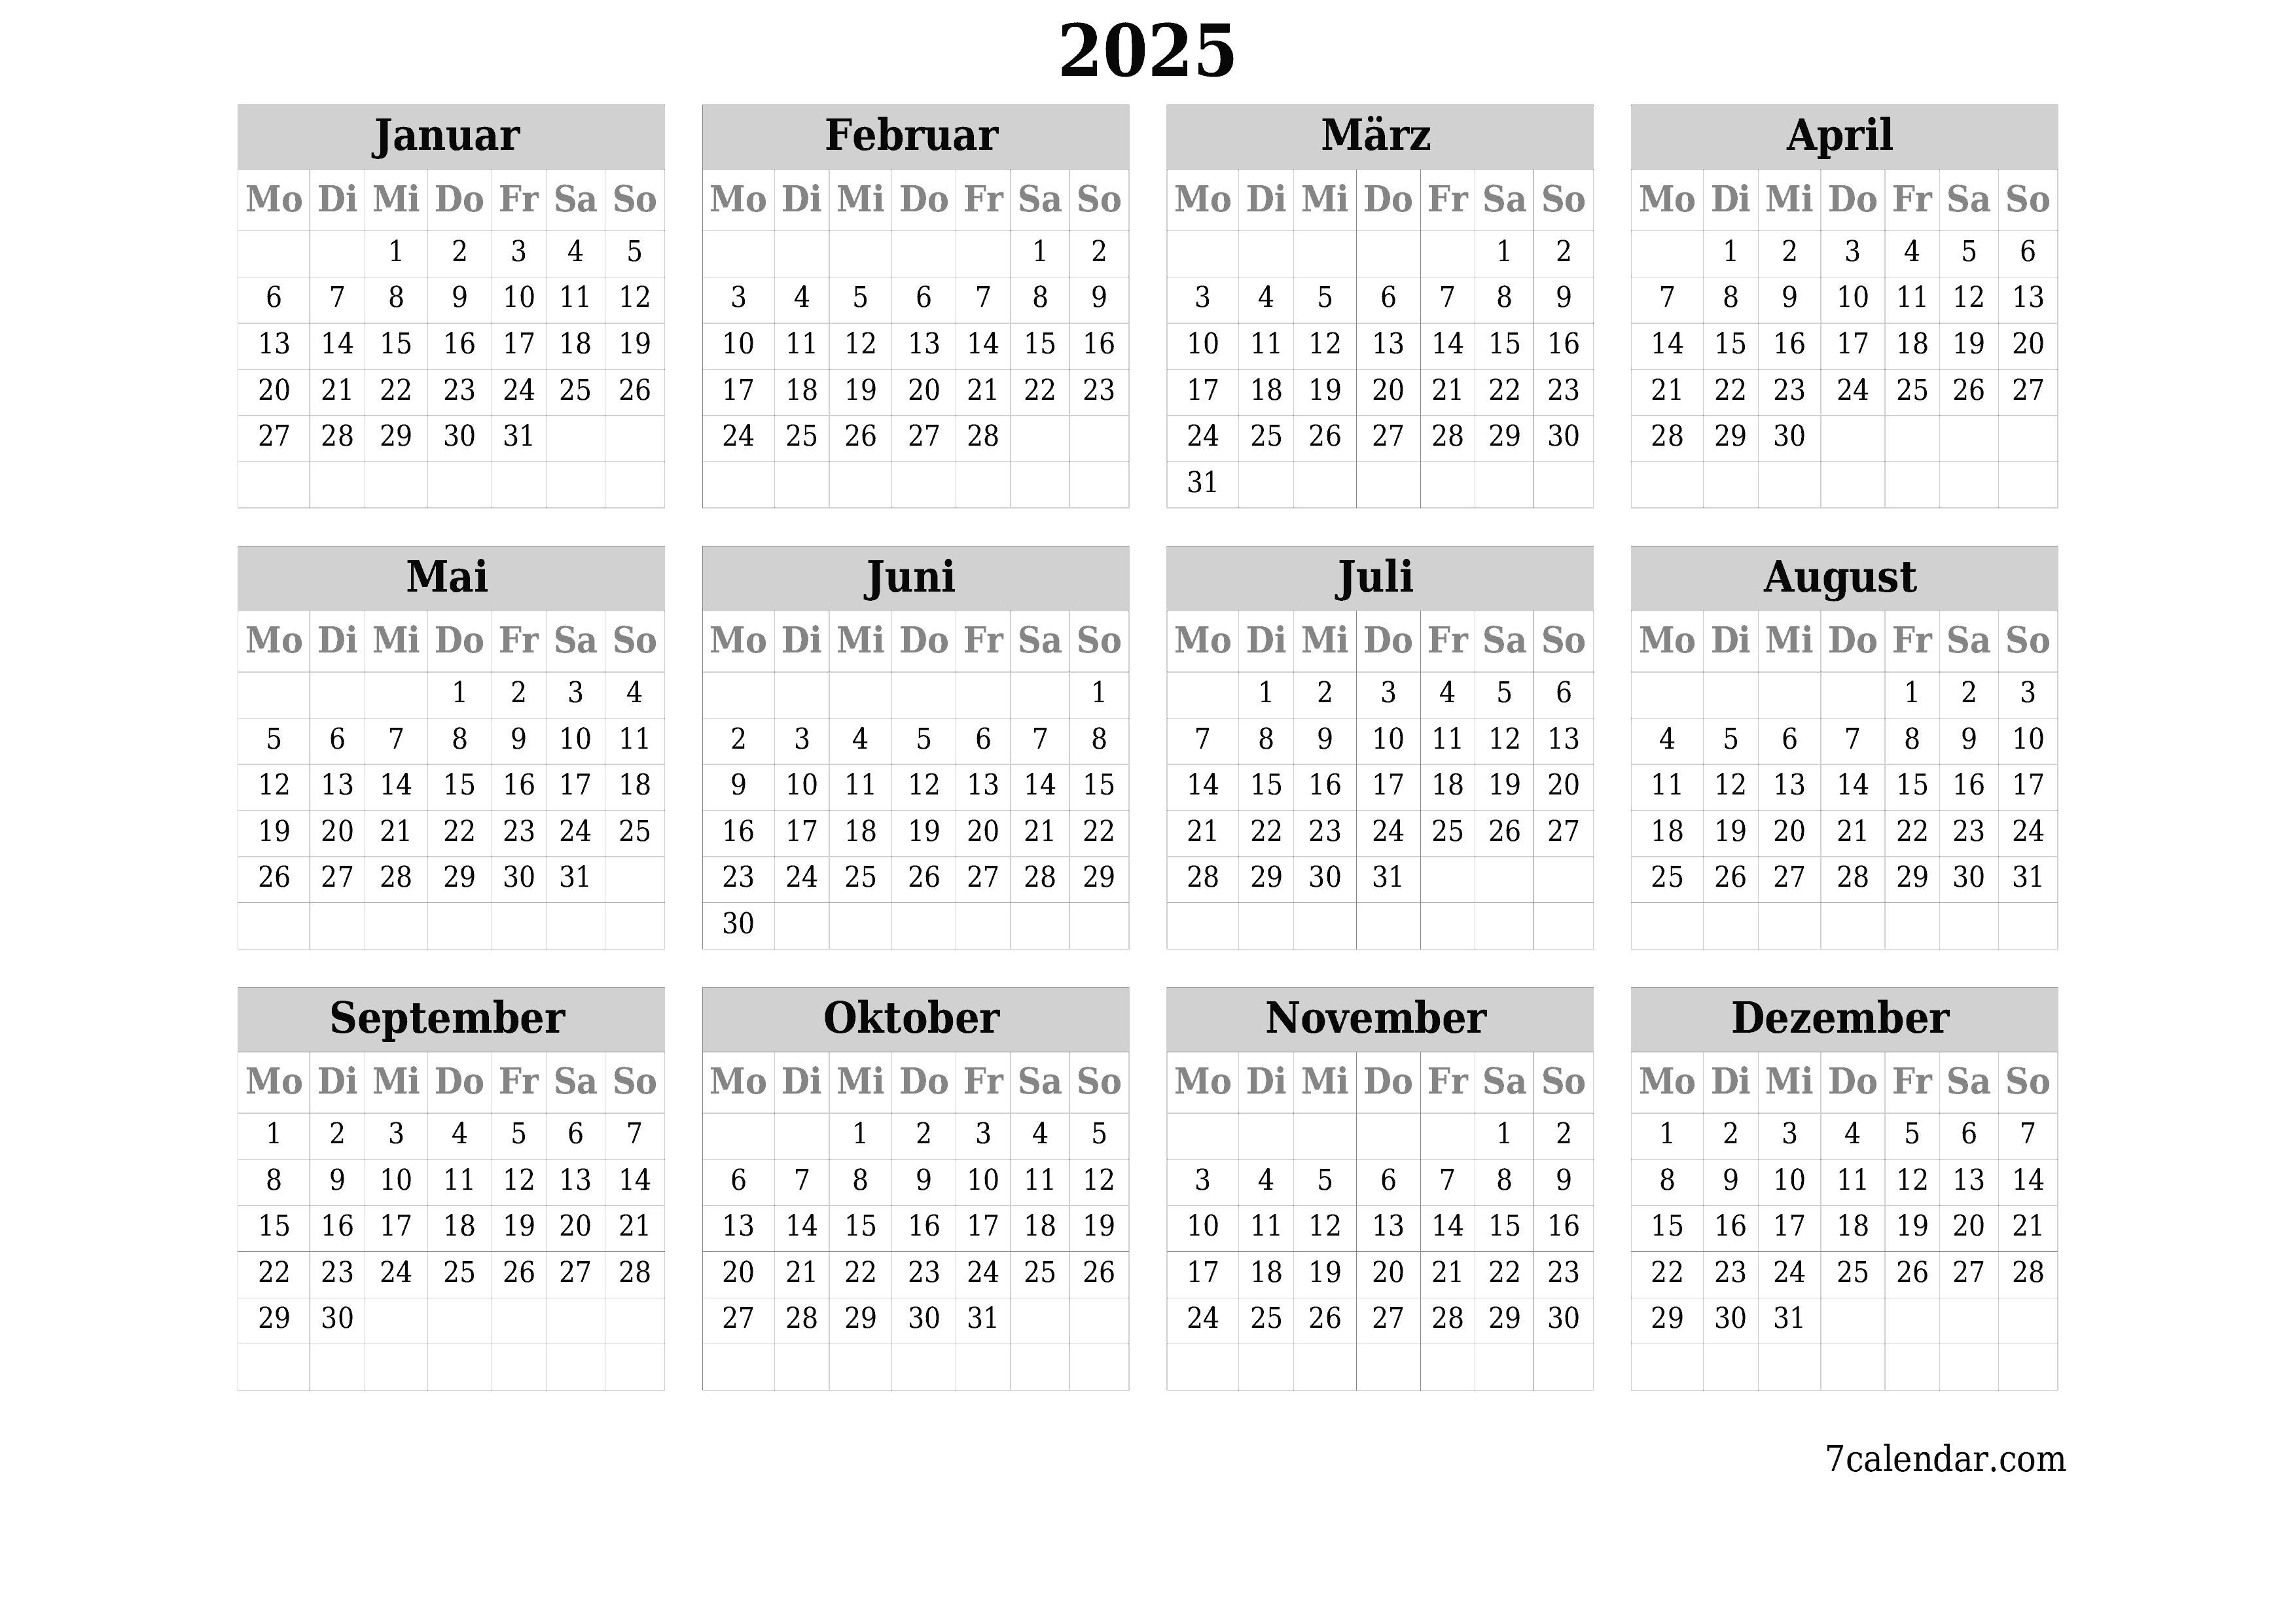 Jahresplanerkalender für das Jahr 2025 mit Notizen leeren, speichern und als PDF PNG German - 7calendar.com drucken